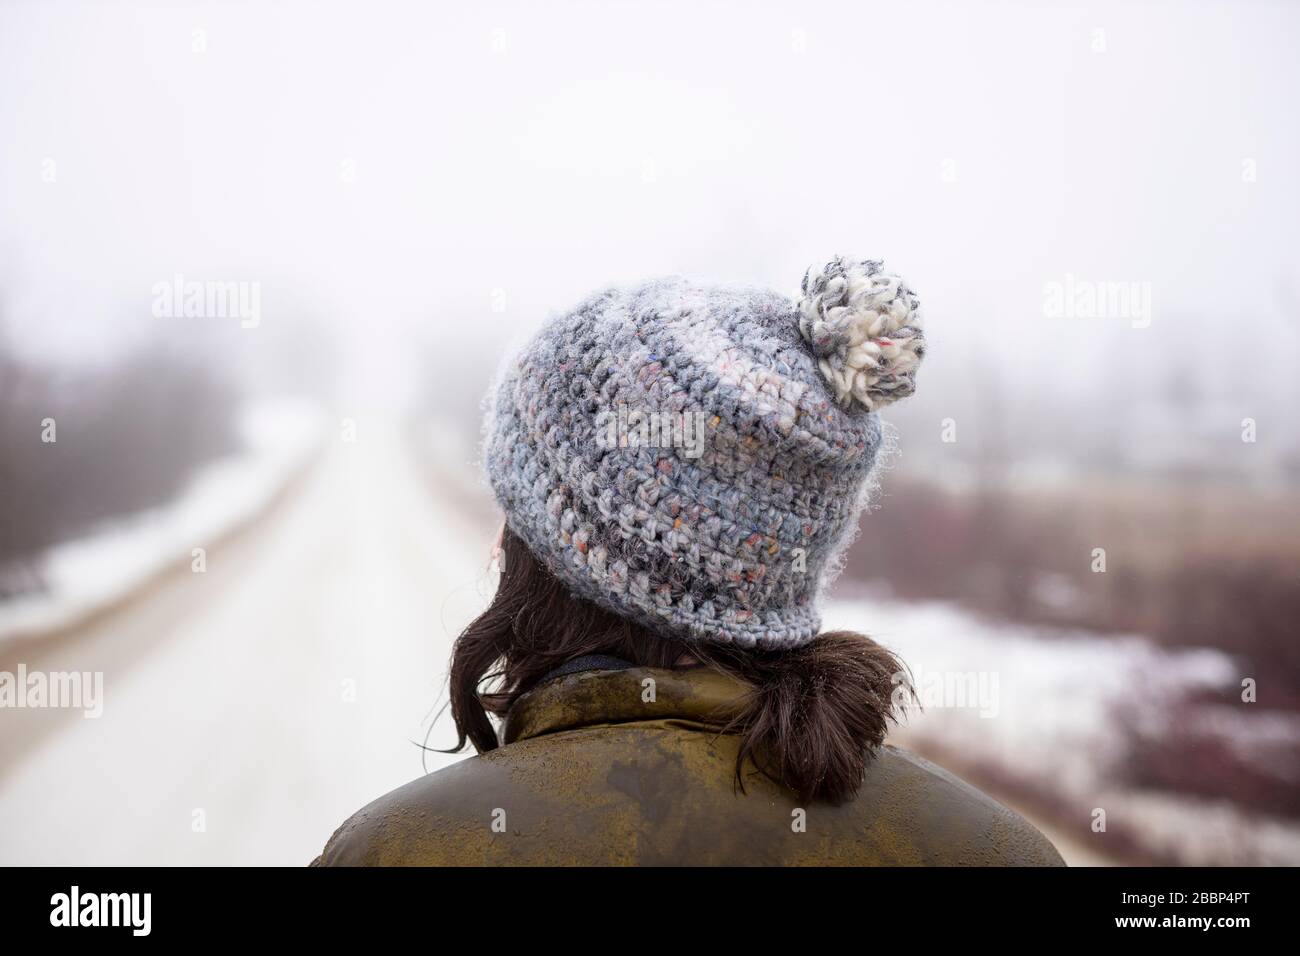 Une dame marche seule sur une route de gravier pendant la réglementation d'urgence concernant le coronavirus / COVID-19, sur une journée de printemps froid brumeuse. Banque D'Images